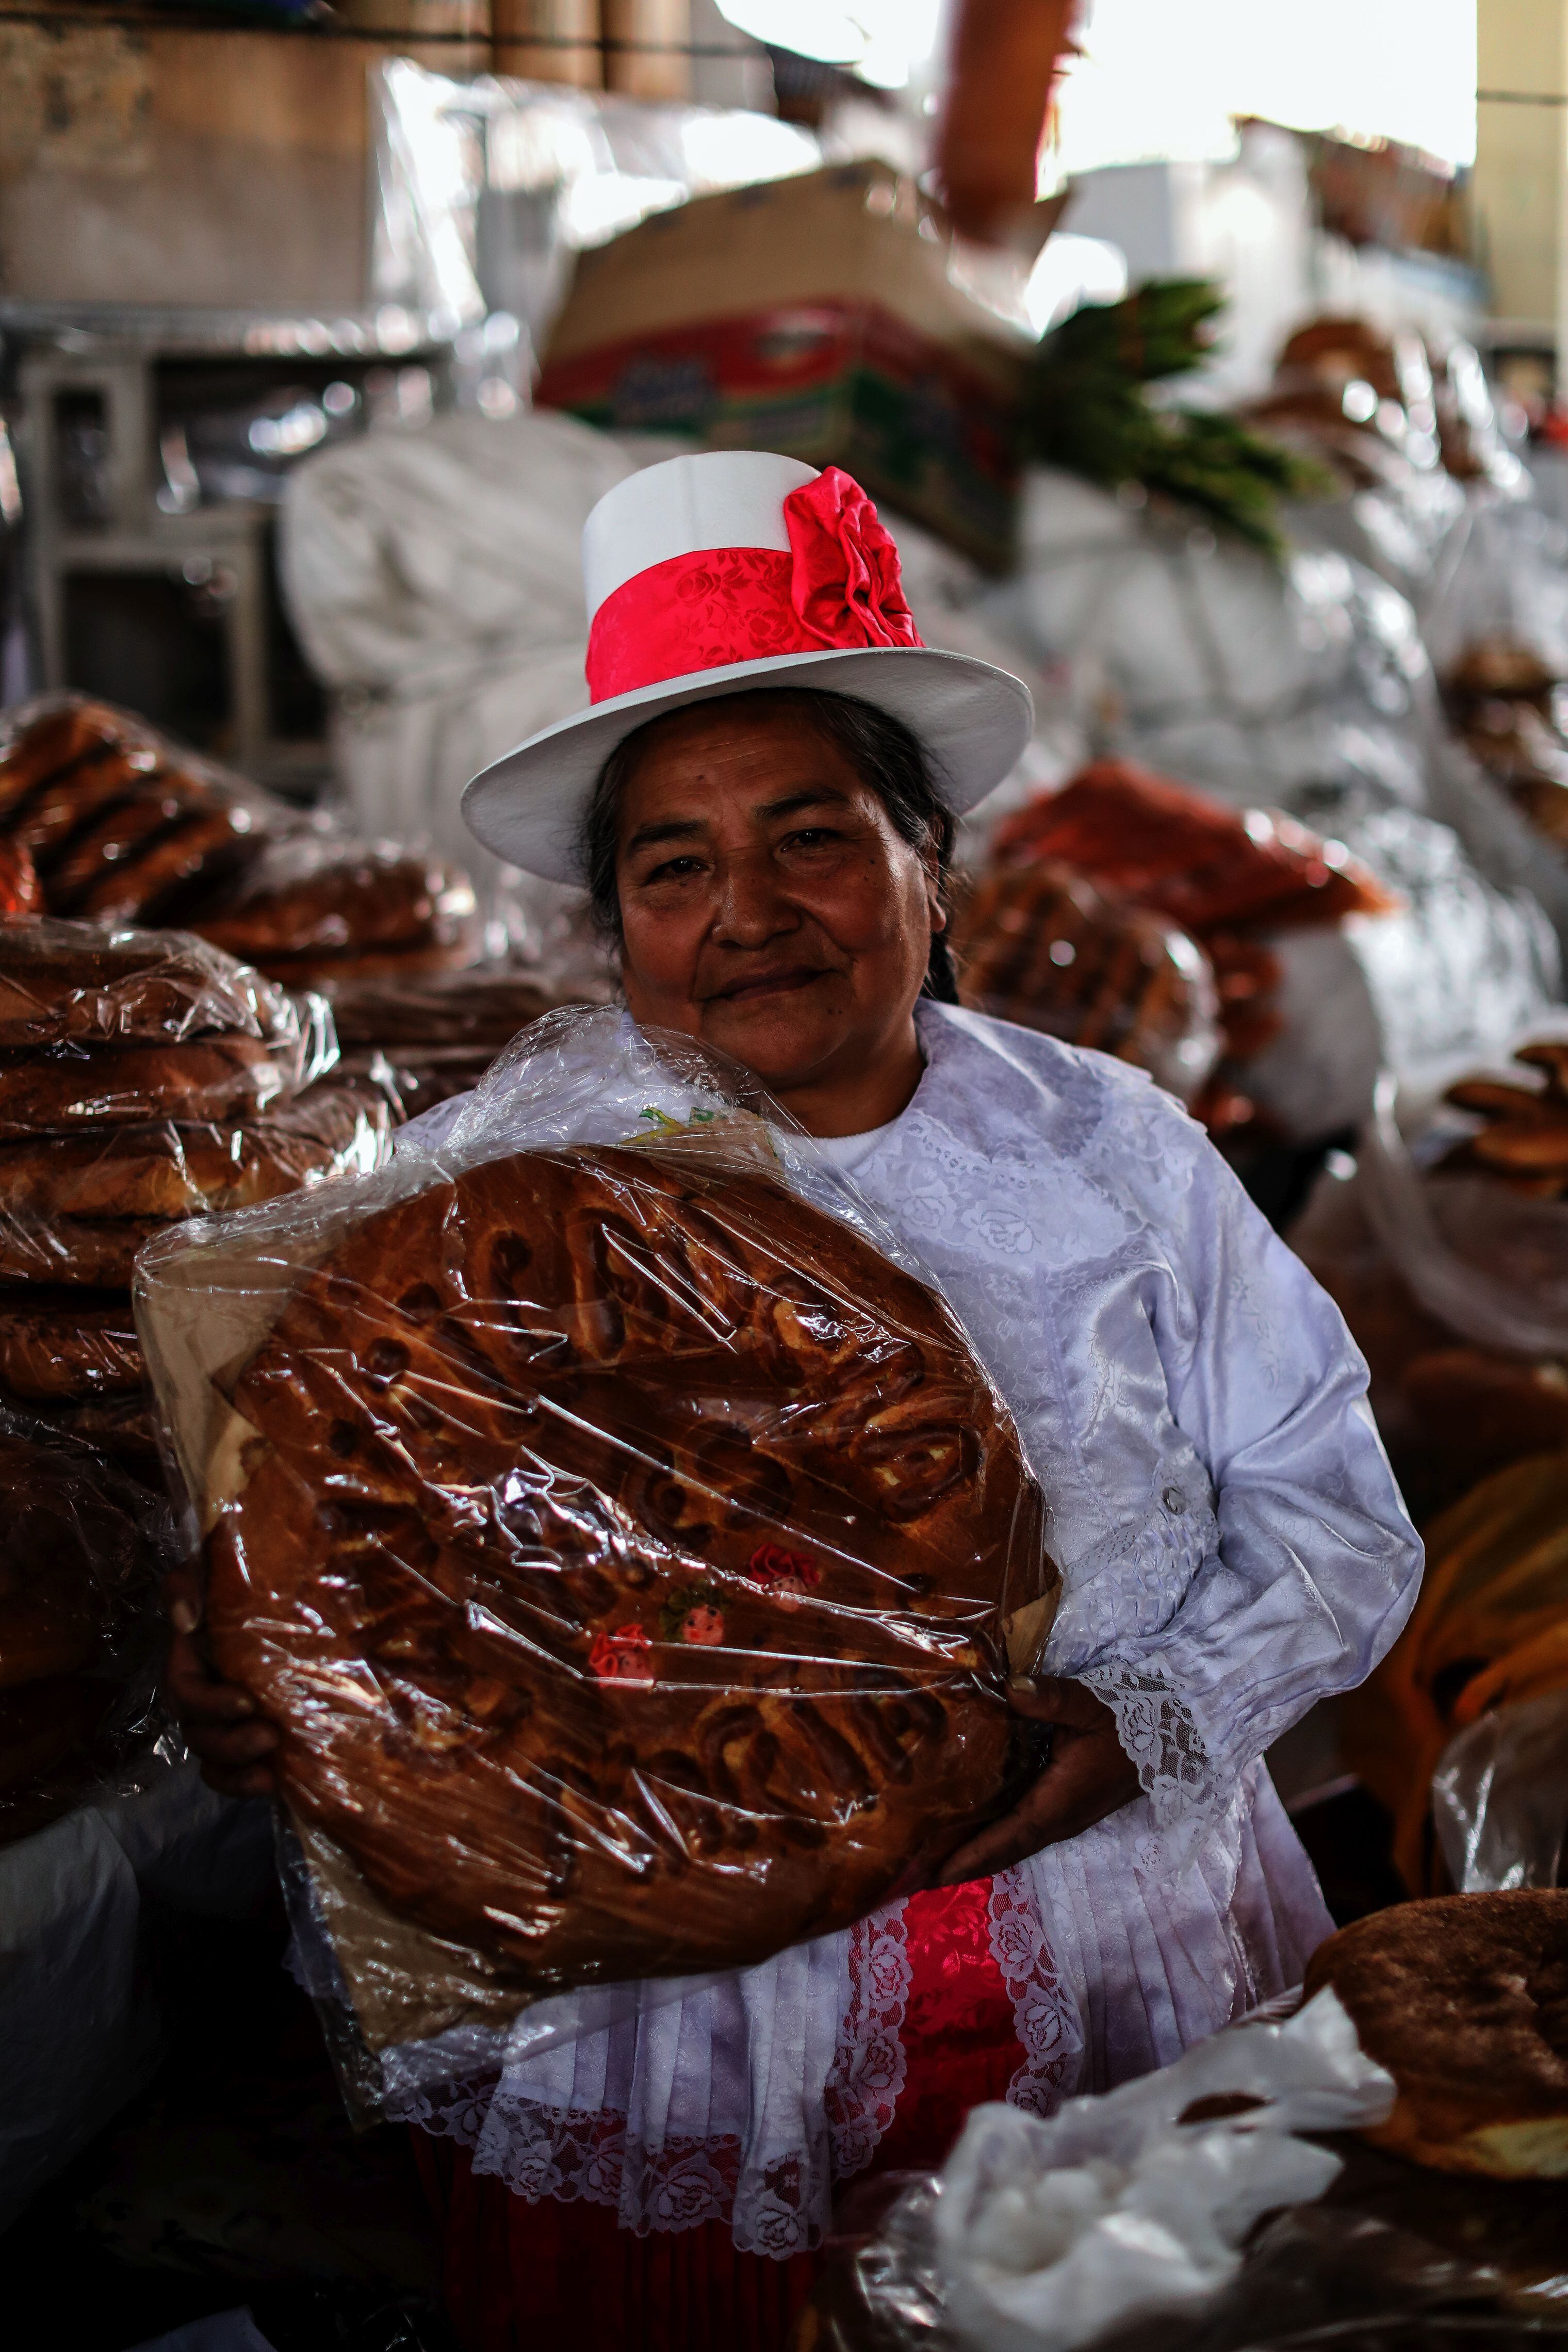 La panadera María Segundo ofrece variedad de panes con la receta familiar de los panes de Oropesa heredada por generaciones. Los vende en el famoso Mercado Central de San Pedro, en Cusco.  